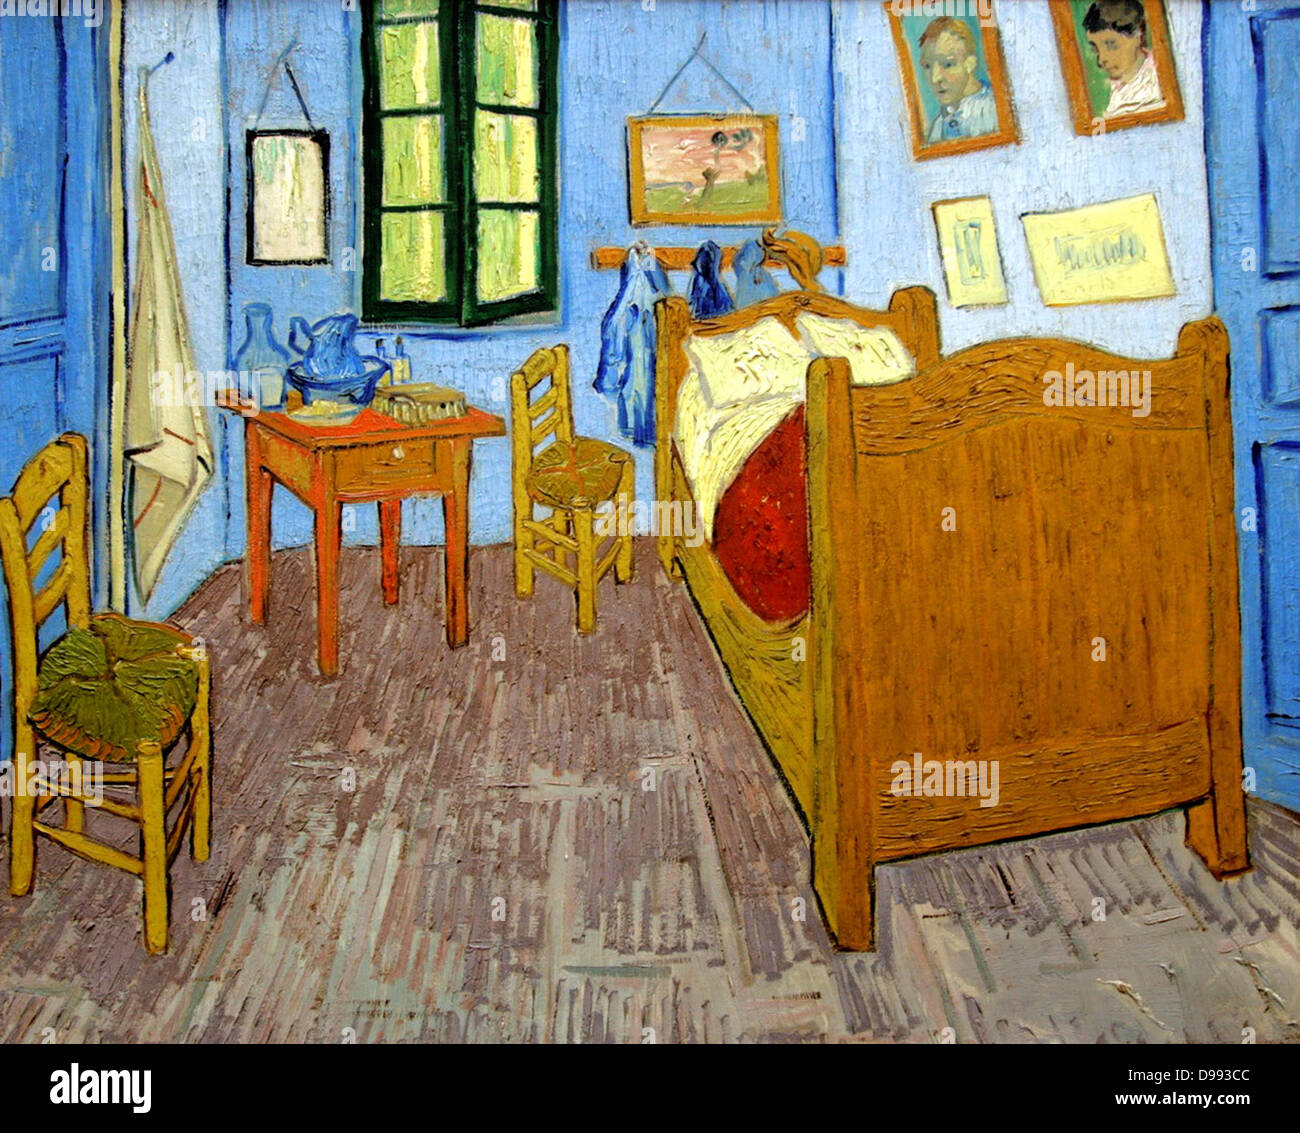 Vincent Van Gogh (1853 - 1890), peintre post-impressionniste hollandais. Van Gogh souffrait de maladie mentale et est mort d'une blessure auto-infligée. Chambre "à Arles", 1889 Banque D'Images